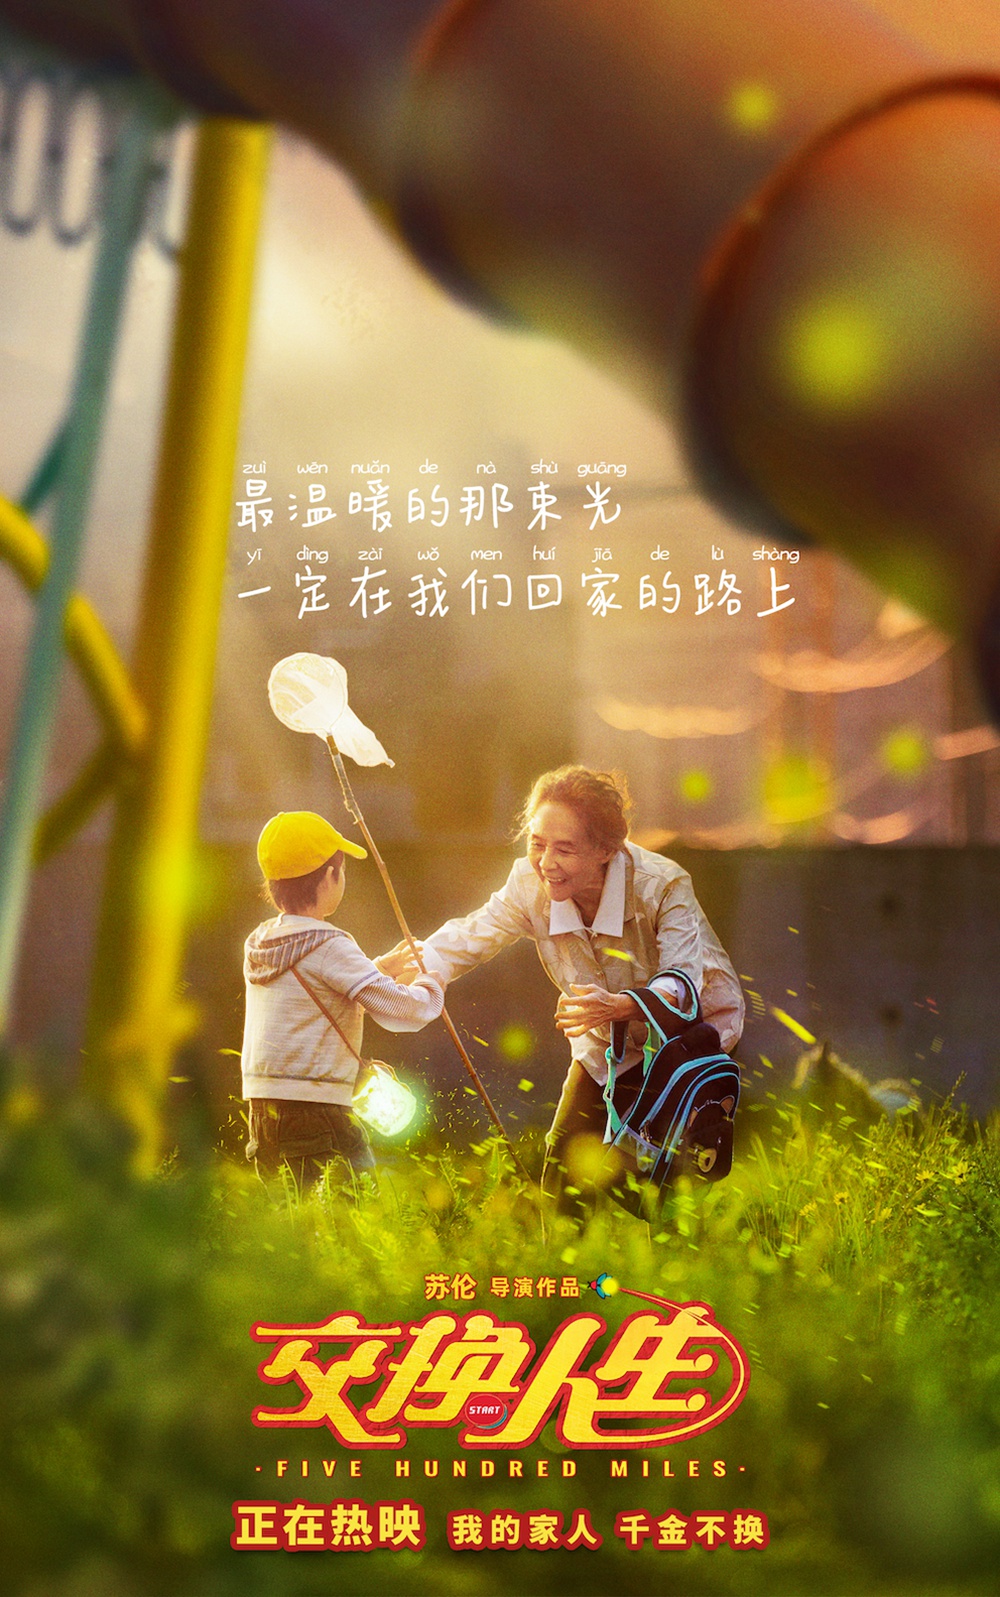 春节档合家欢喜剧《交换人生》发布“拥抱家人”版海报